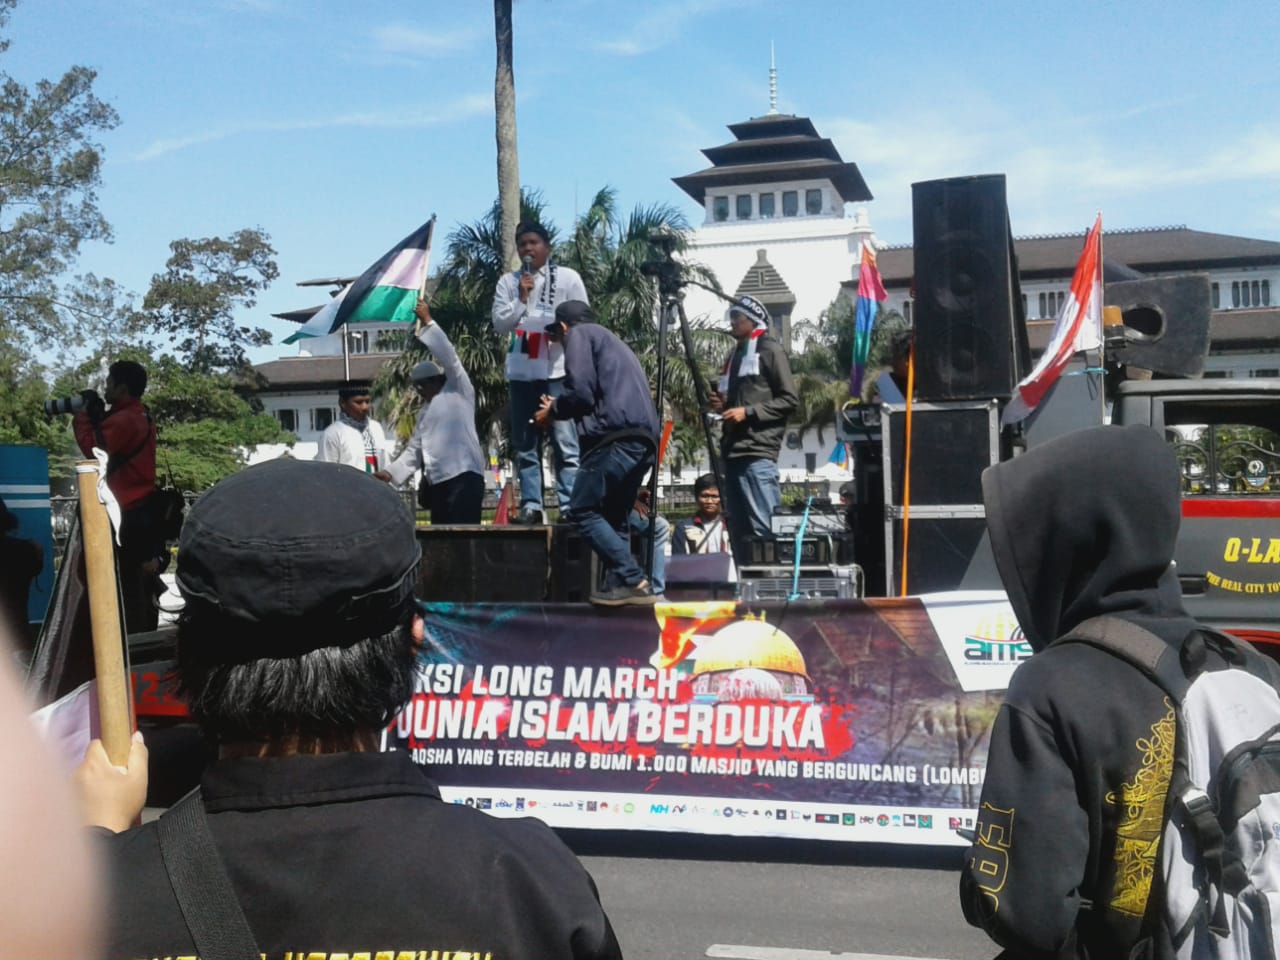 Ratusan Massa Ikuti “Longmarch Dunia Islam Berduka” di Bandung